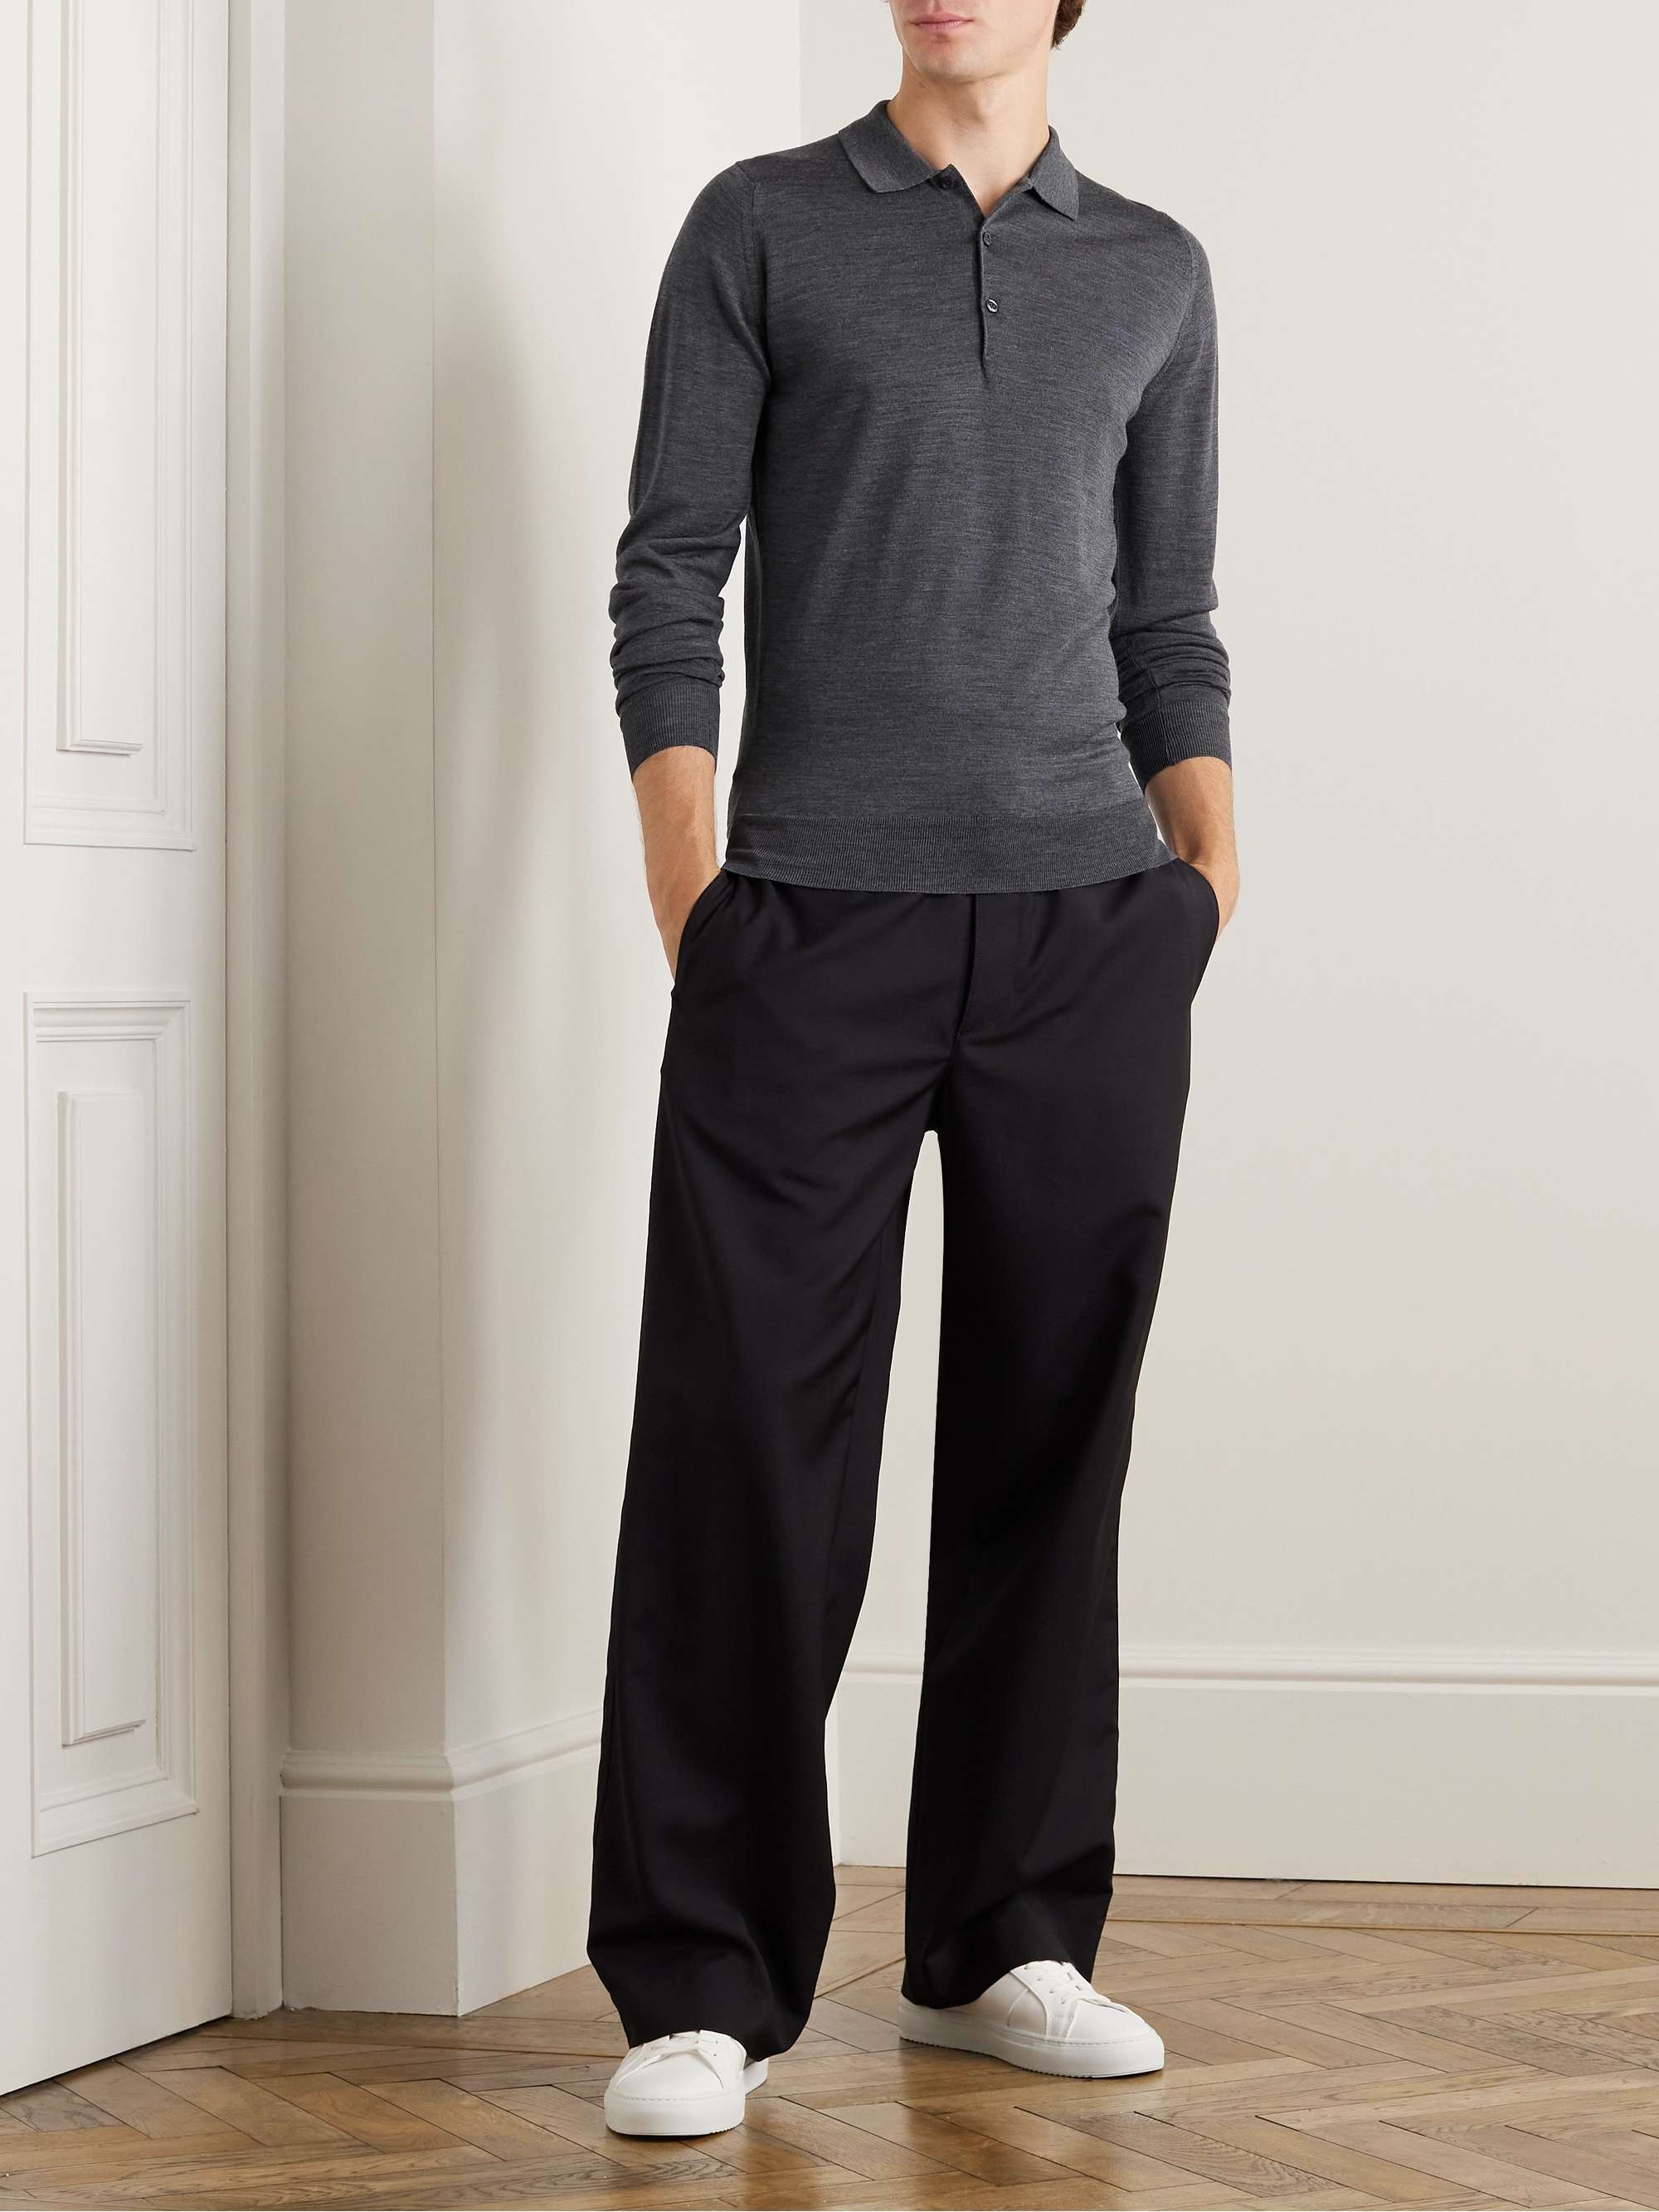 JOHN SMEDLEY Belper Slim-Fit Merino Wool Polo Shirt for Men | MR